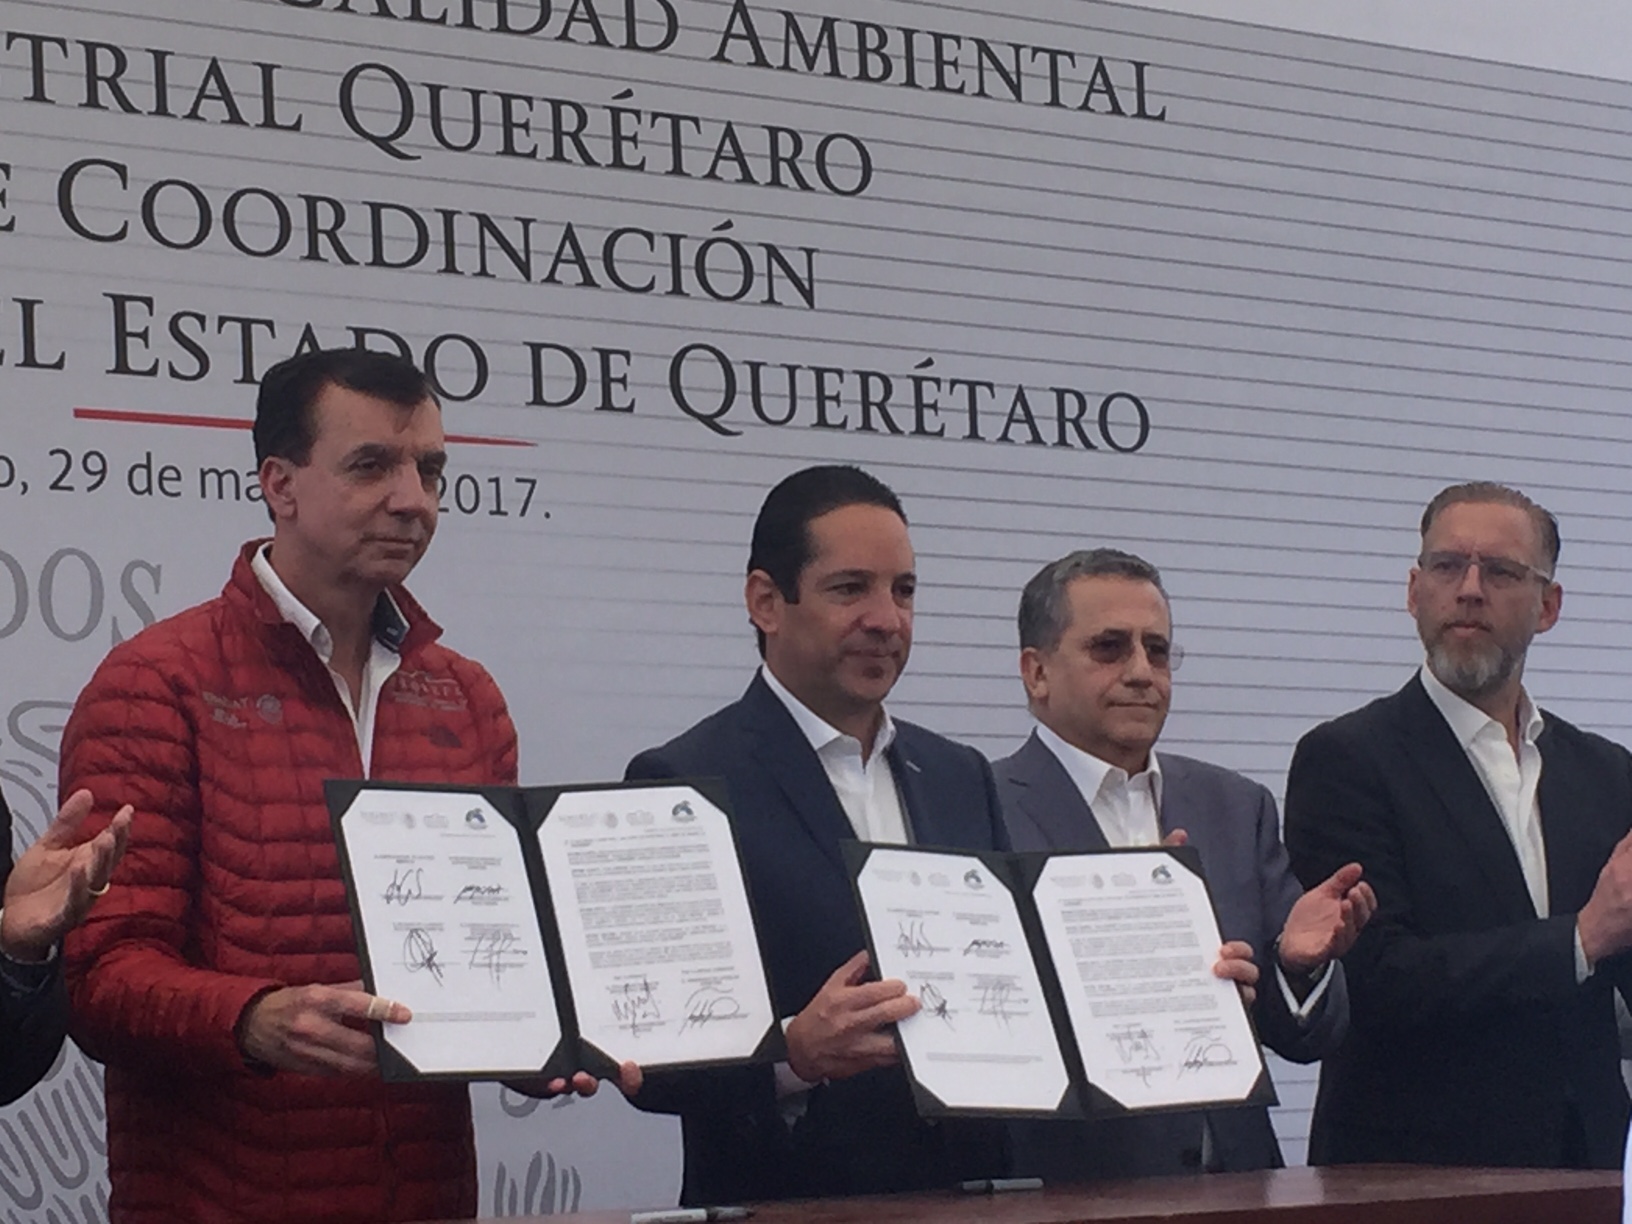  Gobierno de Querétaro retomará el proceso de evaluación para decretar Peña Colorada como área natural protegida